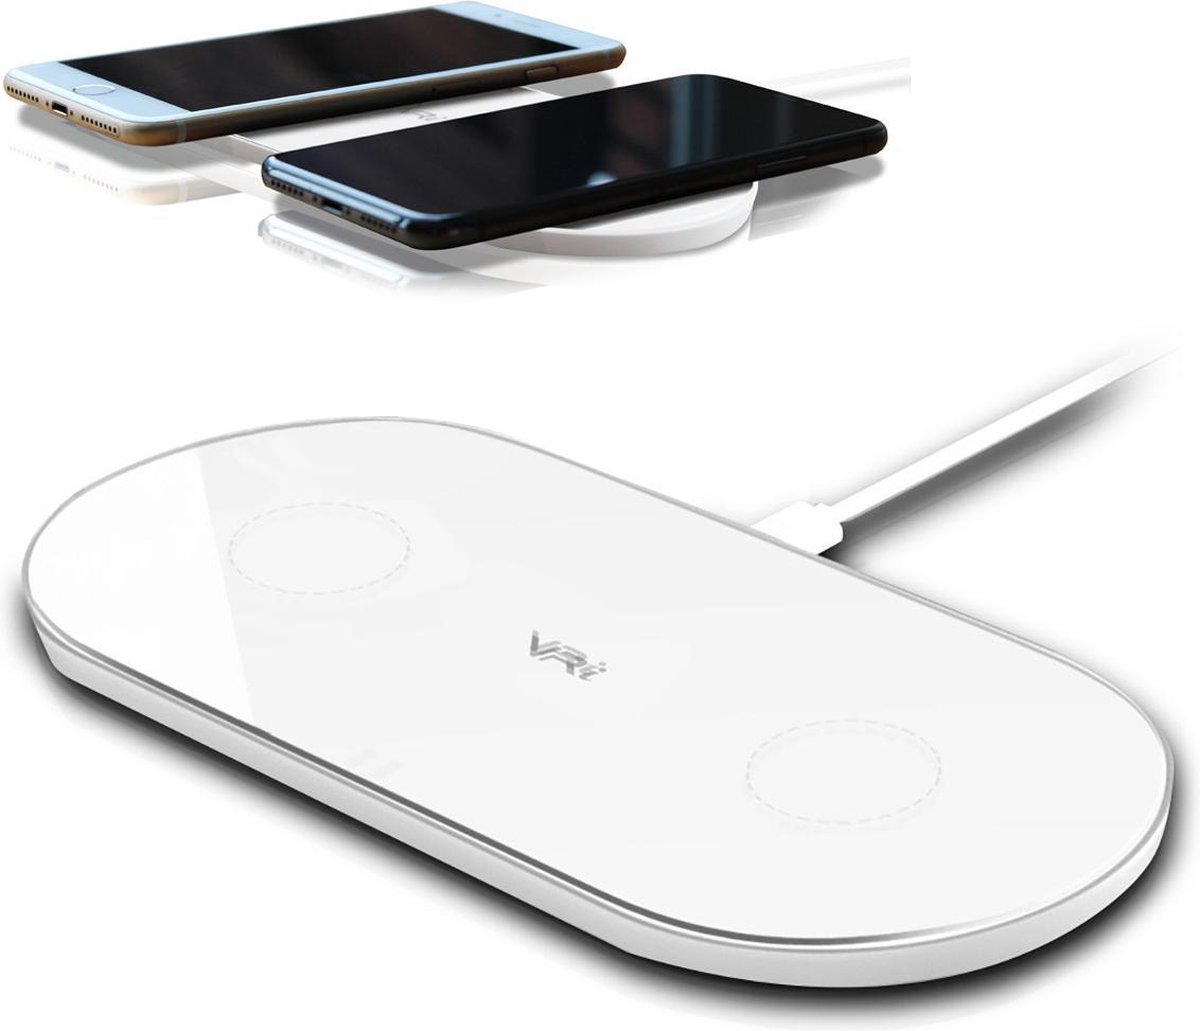 Verrassend genoeg Buitenshuis Anzai VRi X2 draadloze oplader wit – 10W snelladen van twee telefoons tegelijk -  wireless... | bol.com